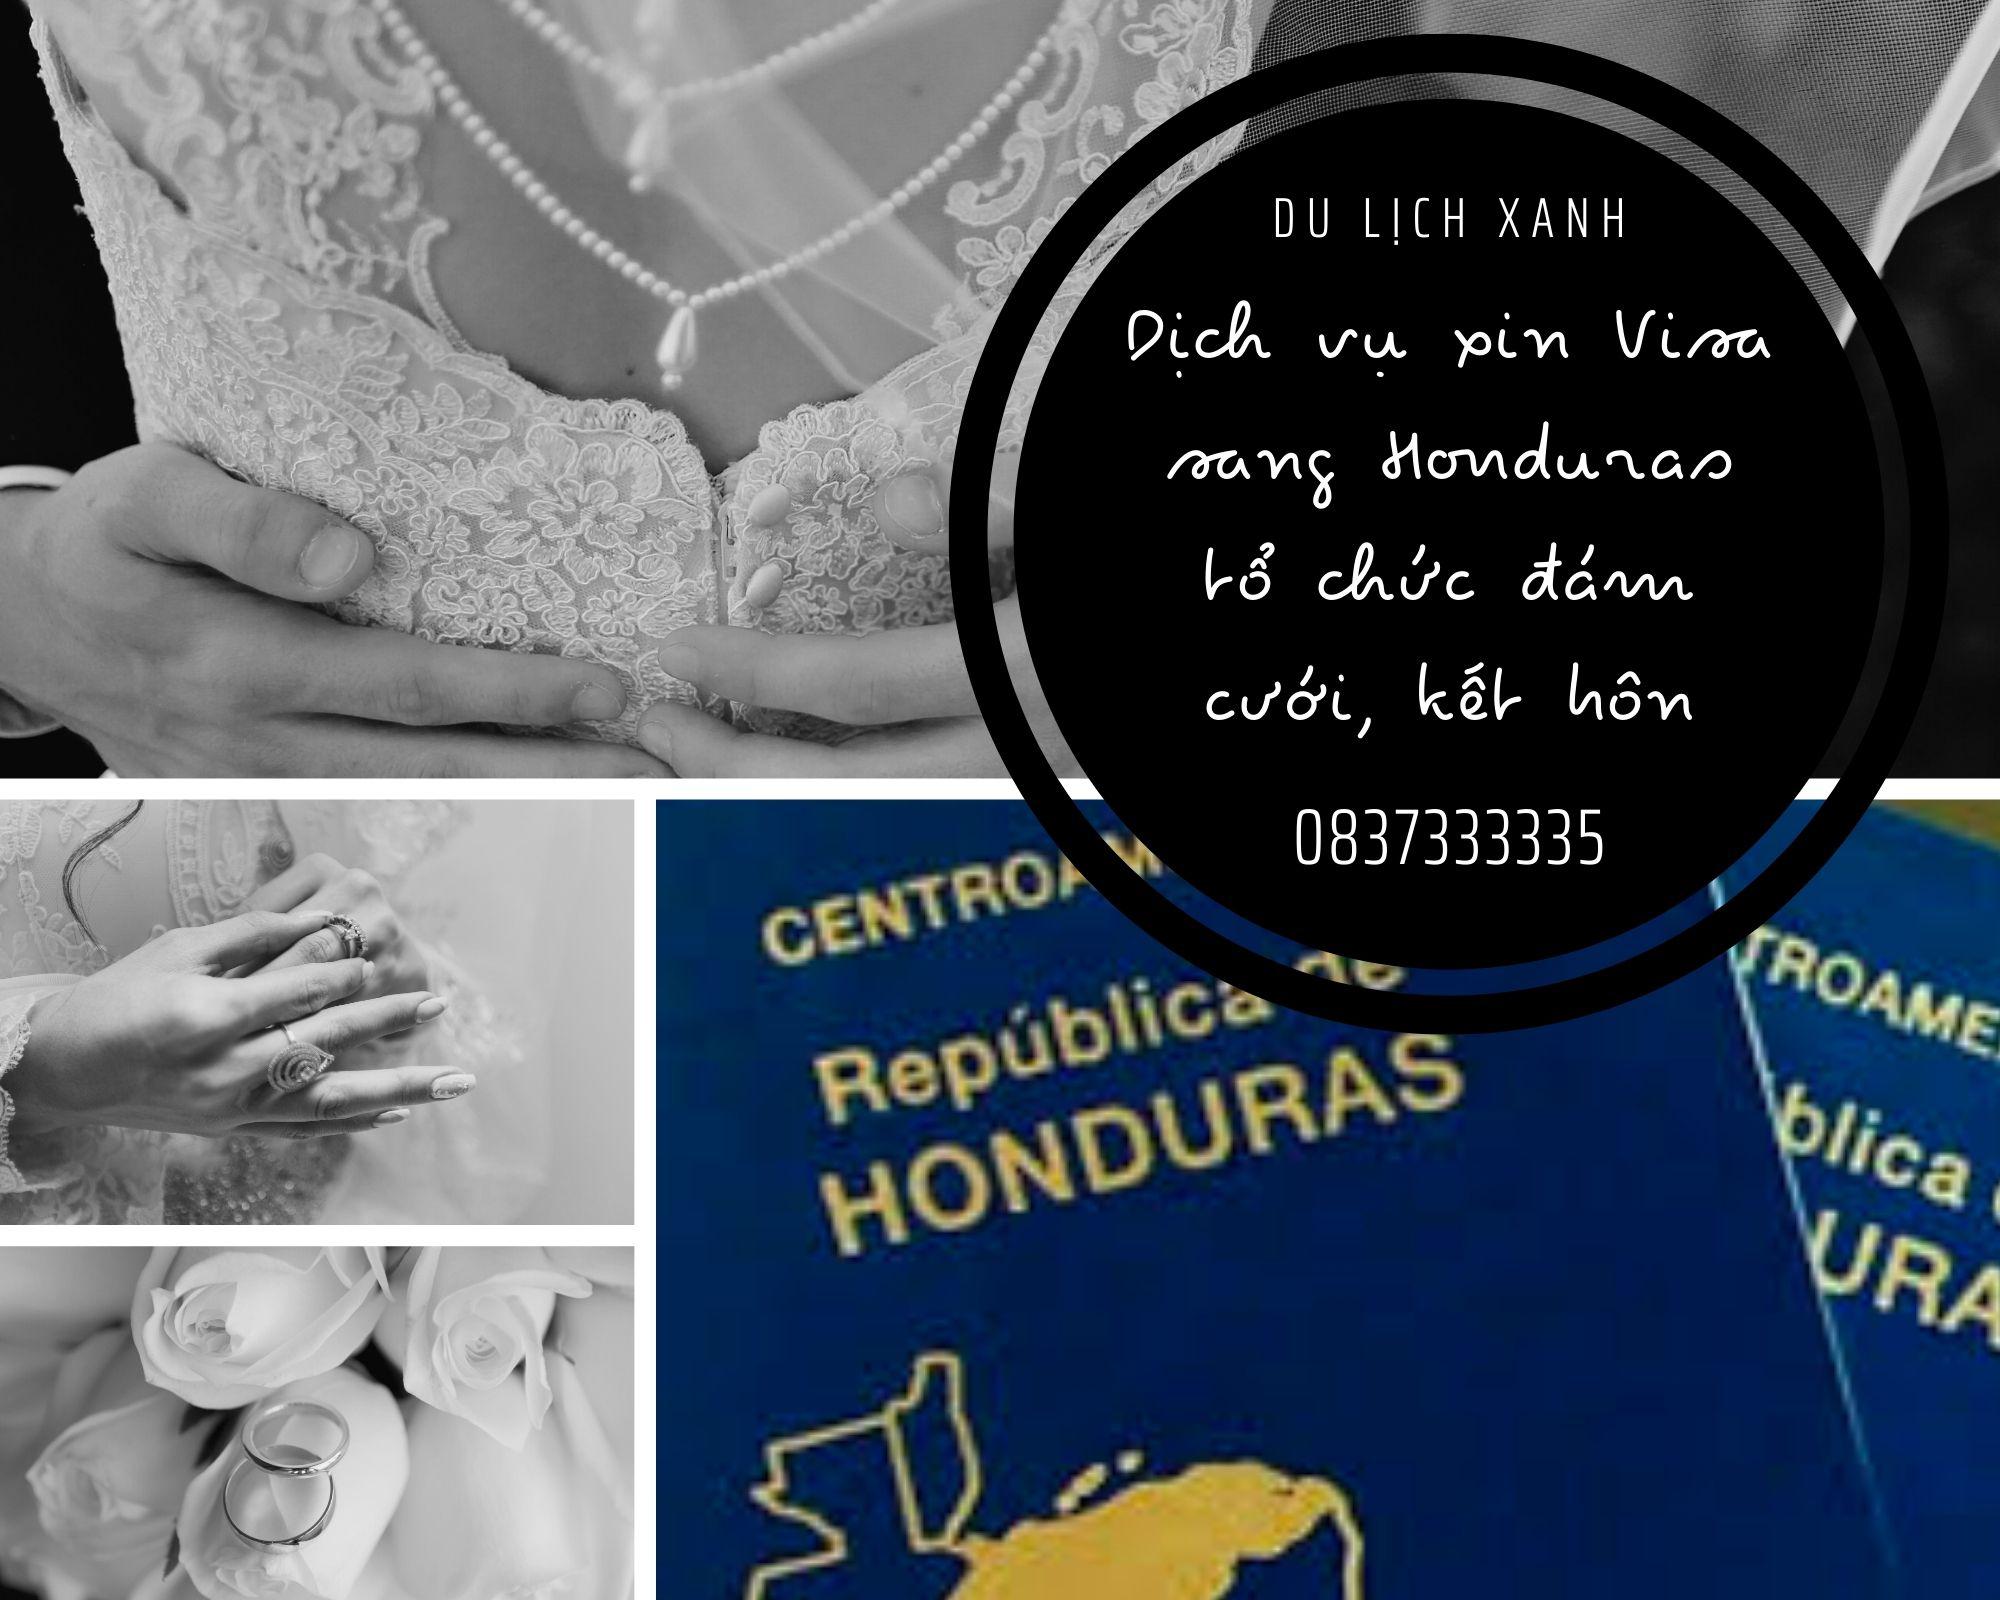 Dịch vụ xin Visa sang Honduras tổ chức đám cưới, kết hôn